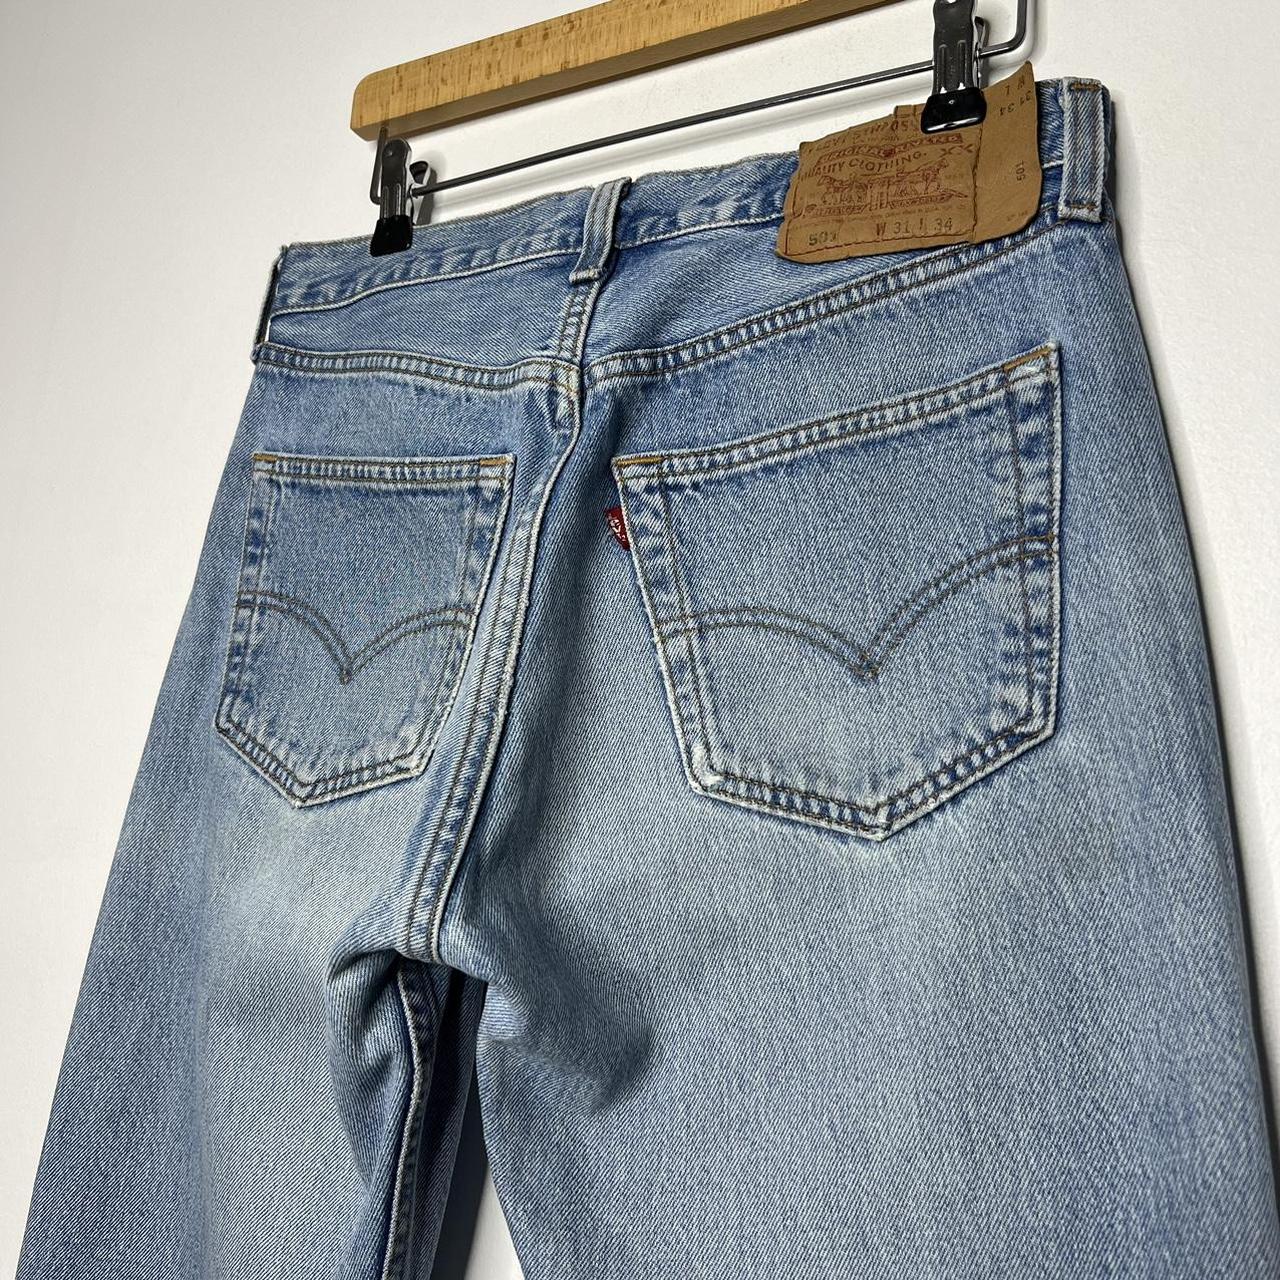 Vintage 90s Levi’s 501 denim jeans Made in USA 🇺🇸... - Depop